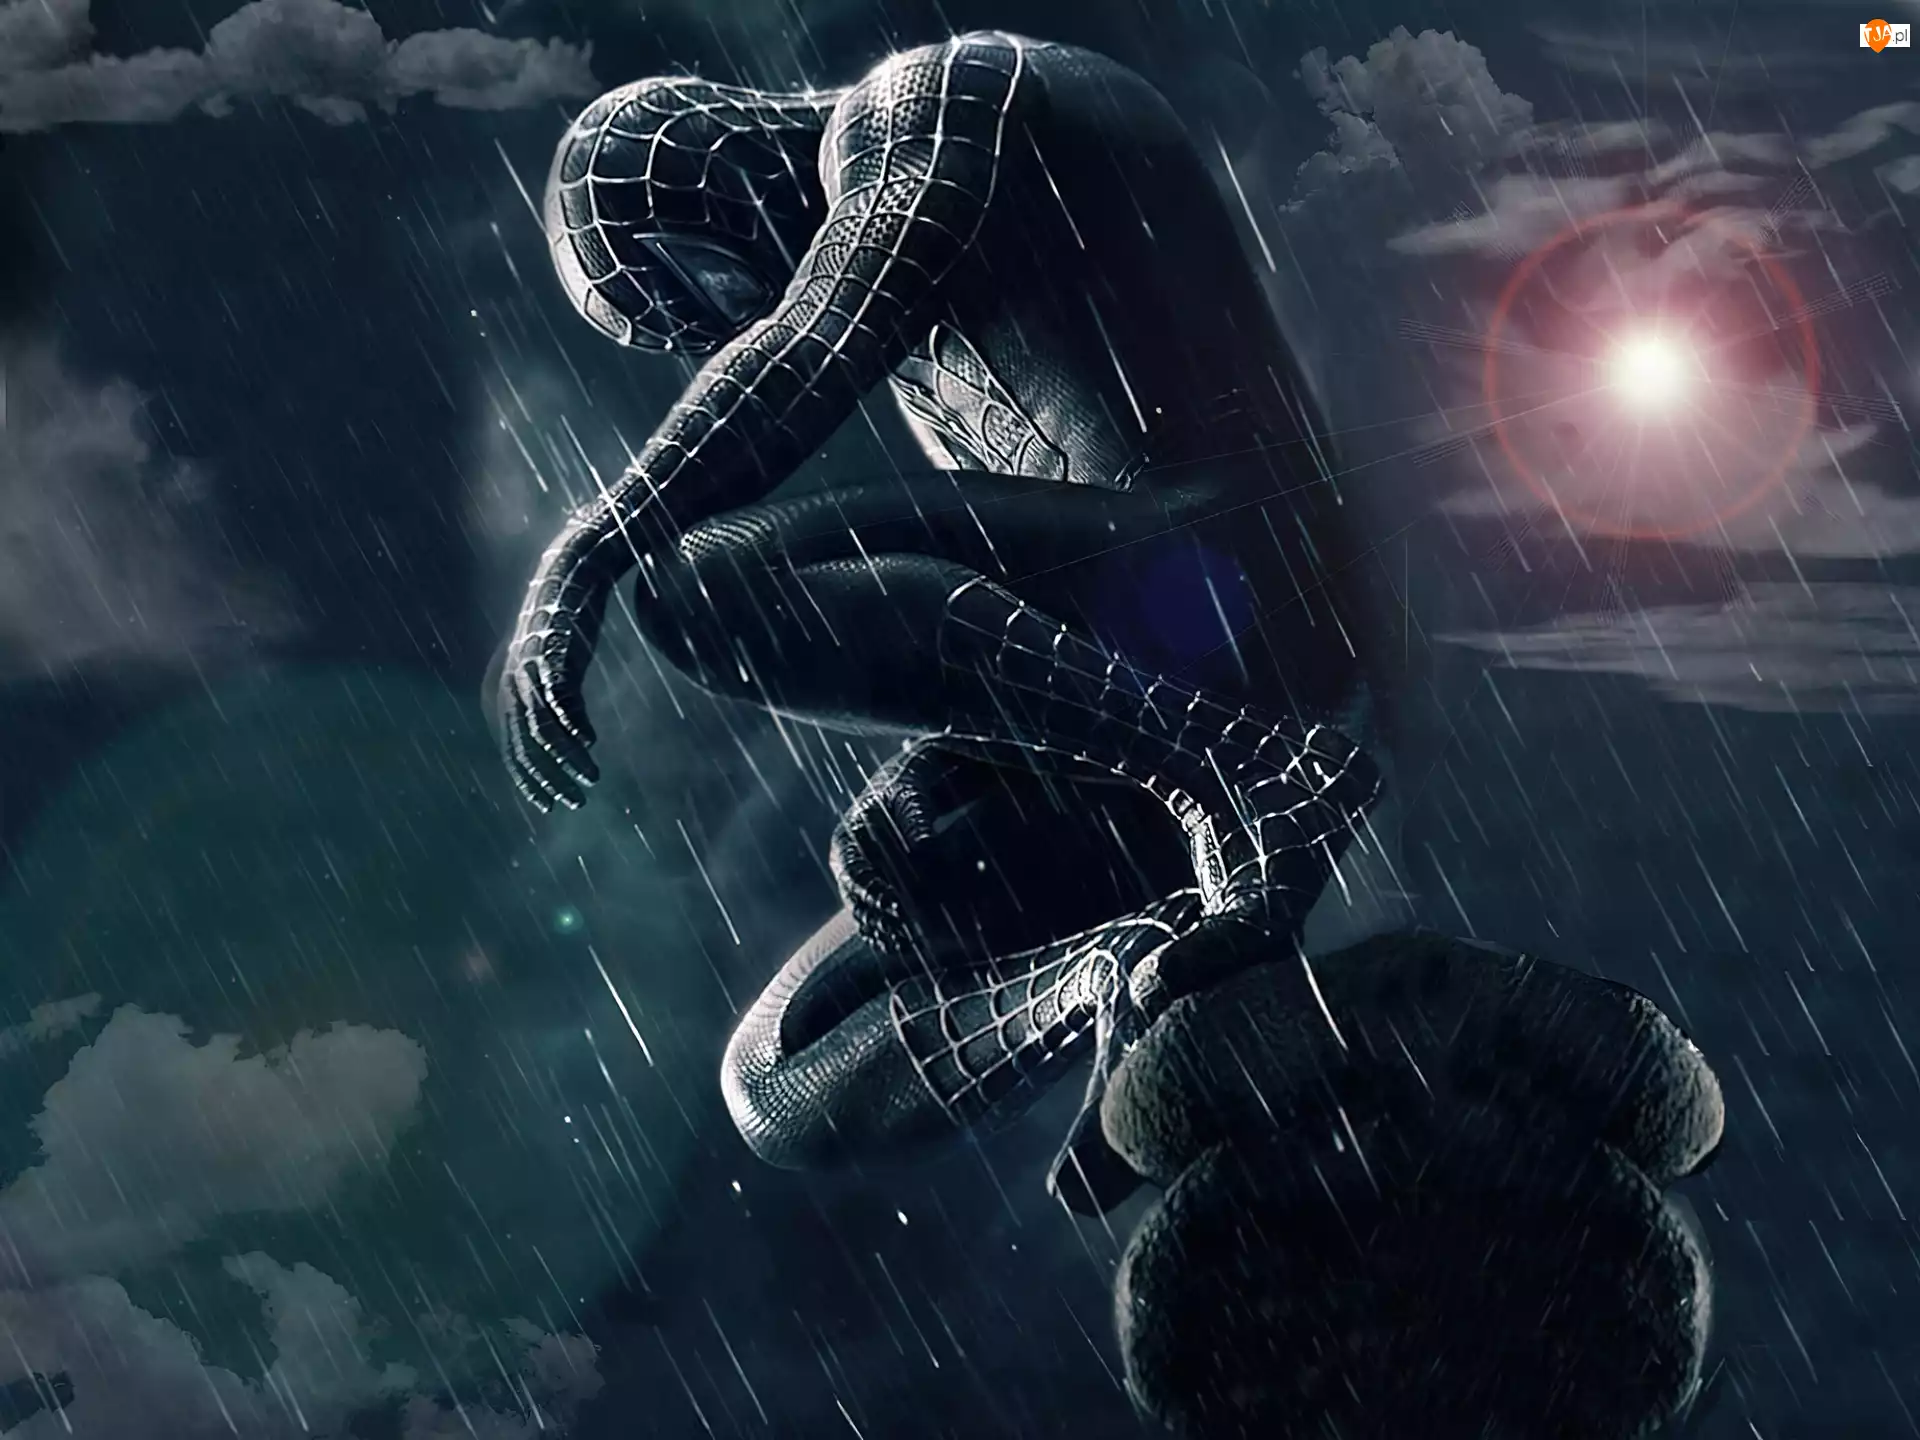 Deszcz, Spider-Man 3